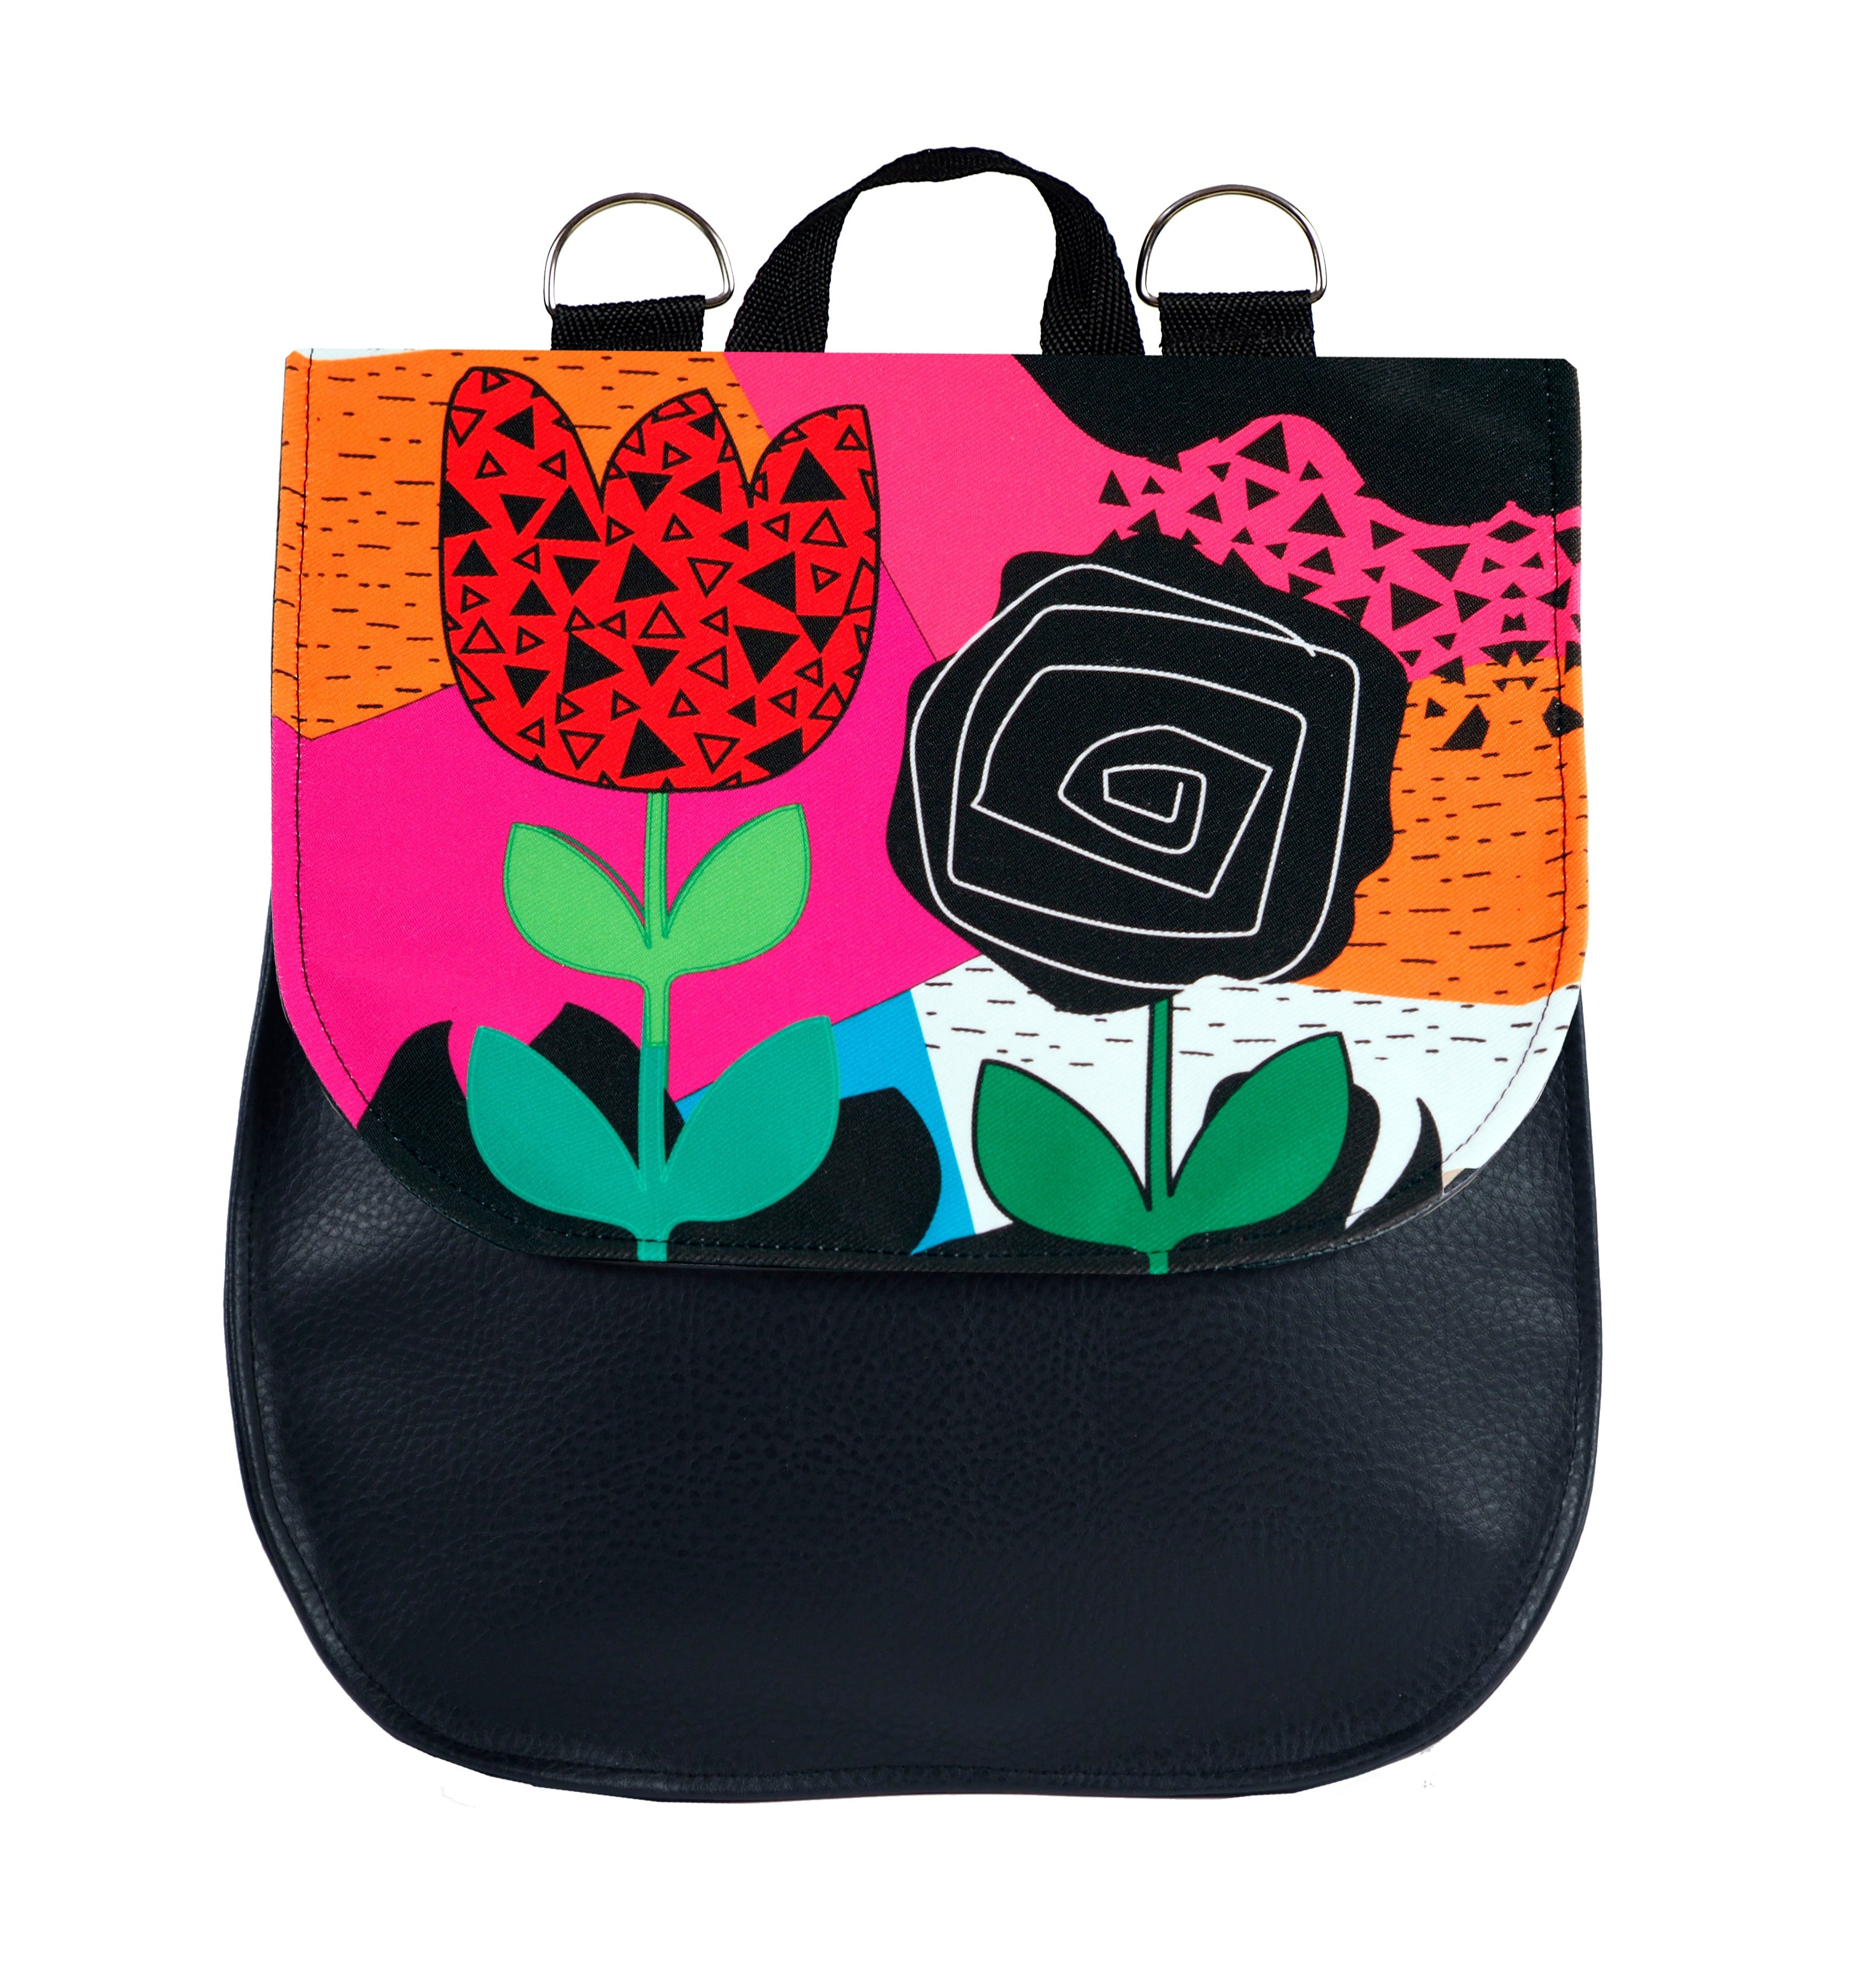 Bardo backpack&bag - Colorful emotion - Premium bardo backpack&bag from BARDO ART WORKS - Just lvabstract, backpack, bag, black, dark blue, dots, floral, graphic, handmade, messenger, nature, vegan leather, work85.00! Shop now at BARDO ART WORKS